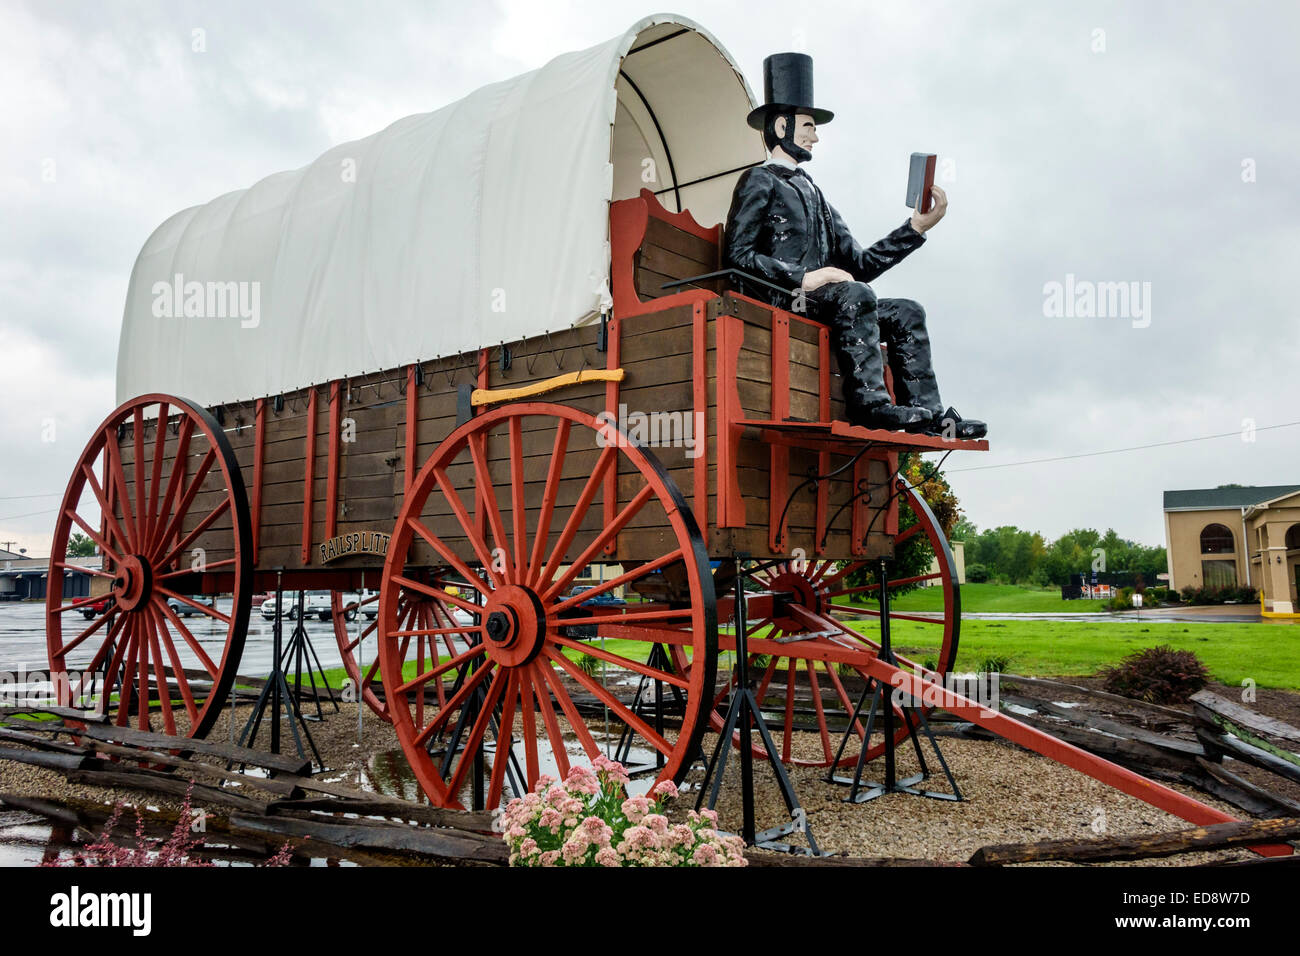 Illinois Logan County, Lincoln, autostrada storica Route 66, Railsplitter Covered Wagon, il più grande carro coperto del mondo, Guinness Book of World Records, roadsi Foto Stock